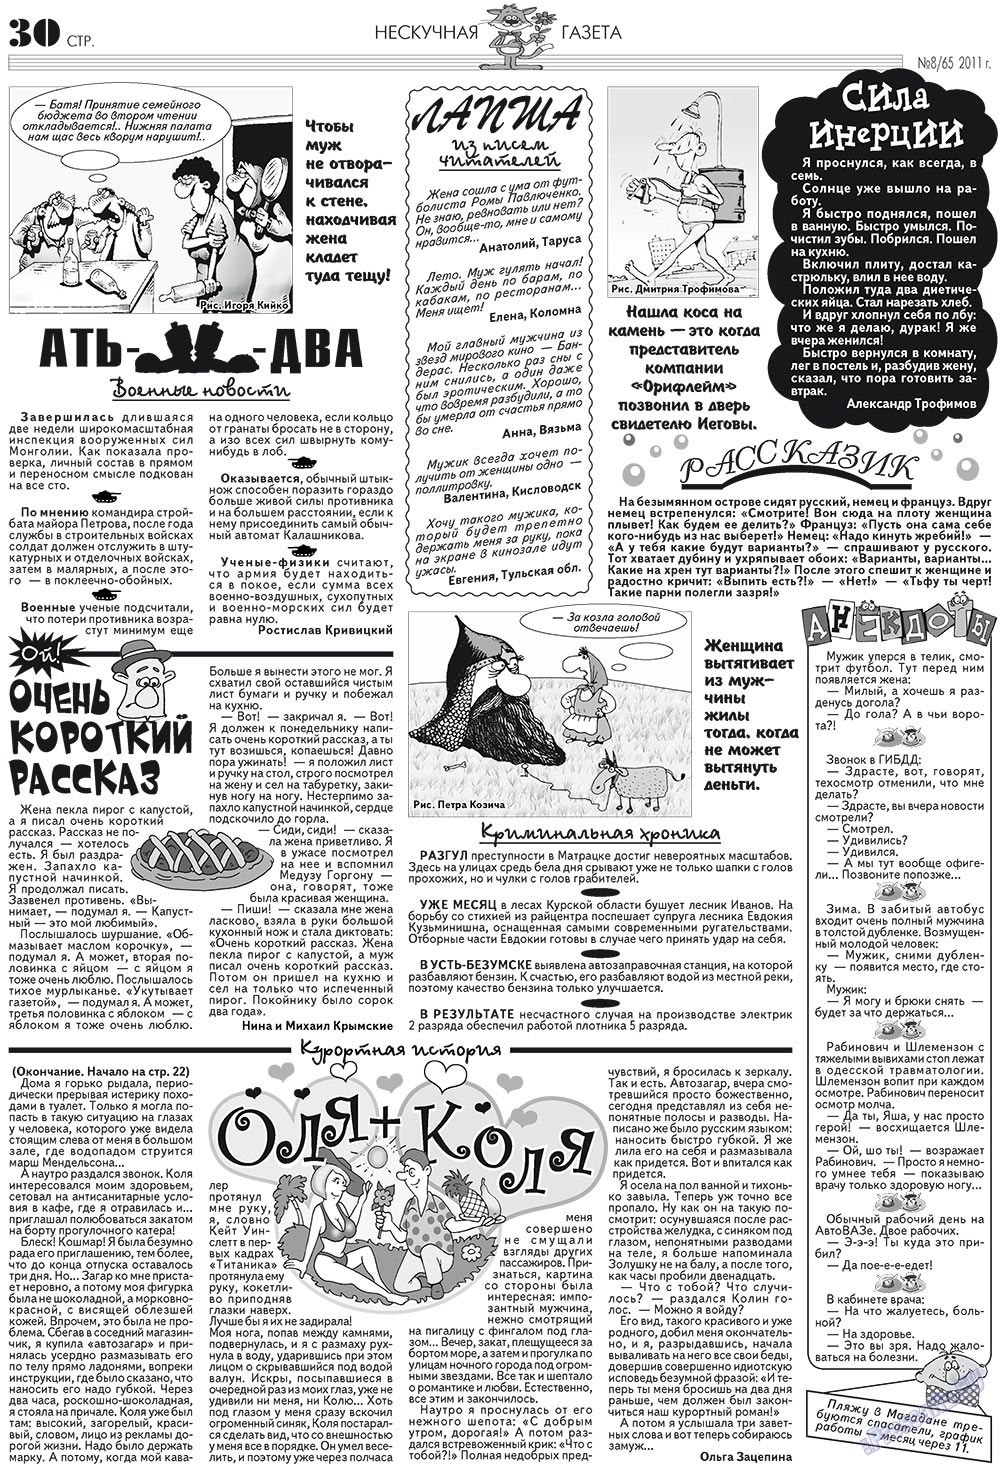 Нескучная газета (журнал). 2011 год, номер 8, стр. 26